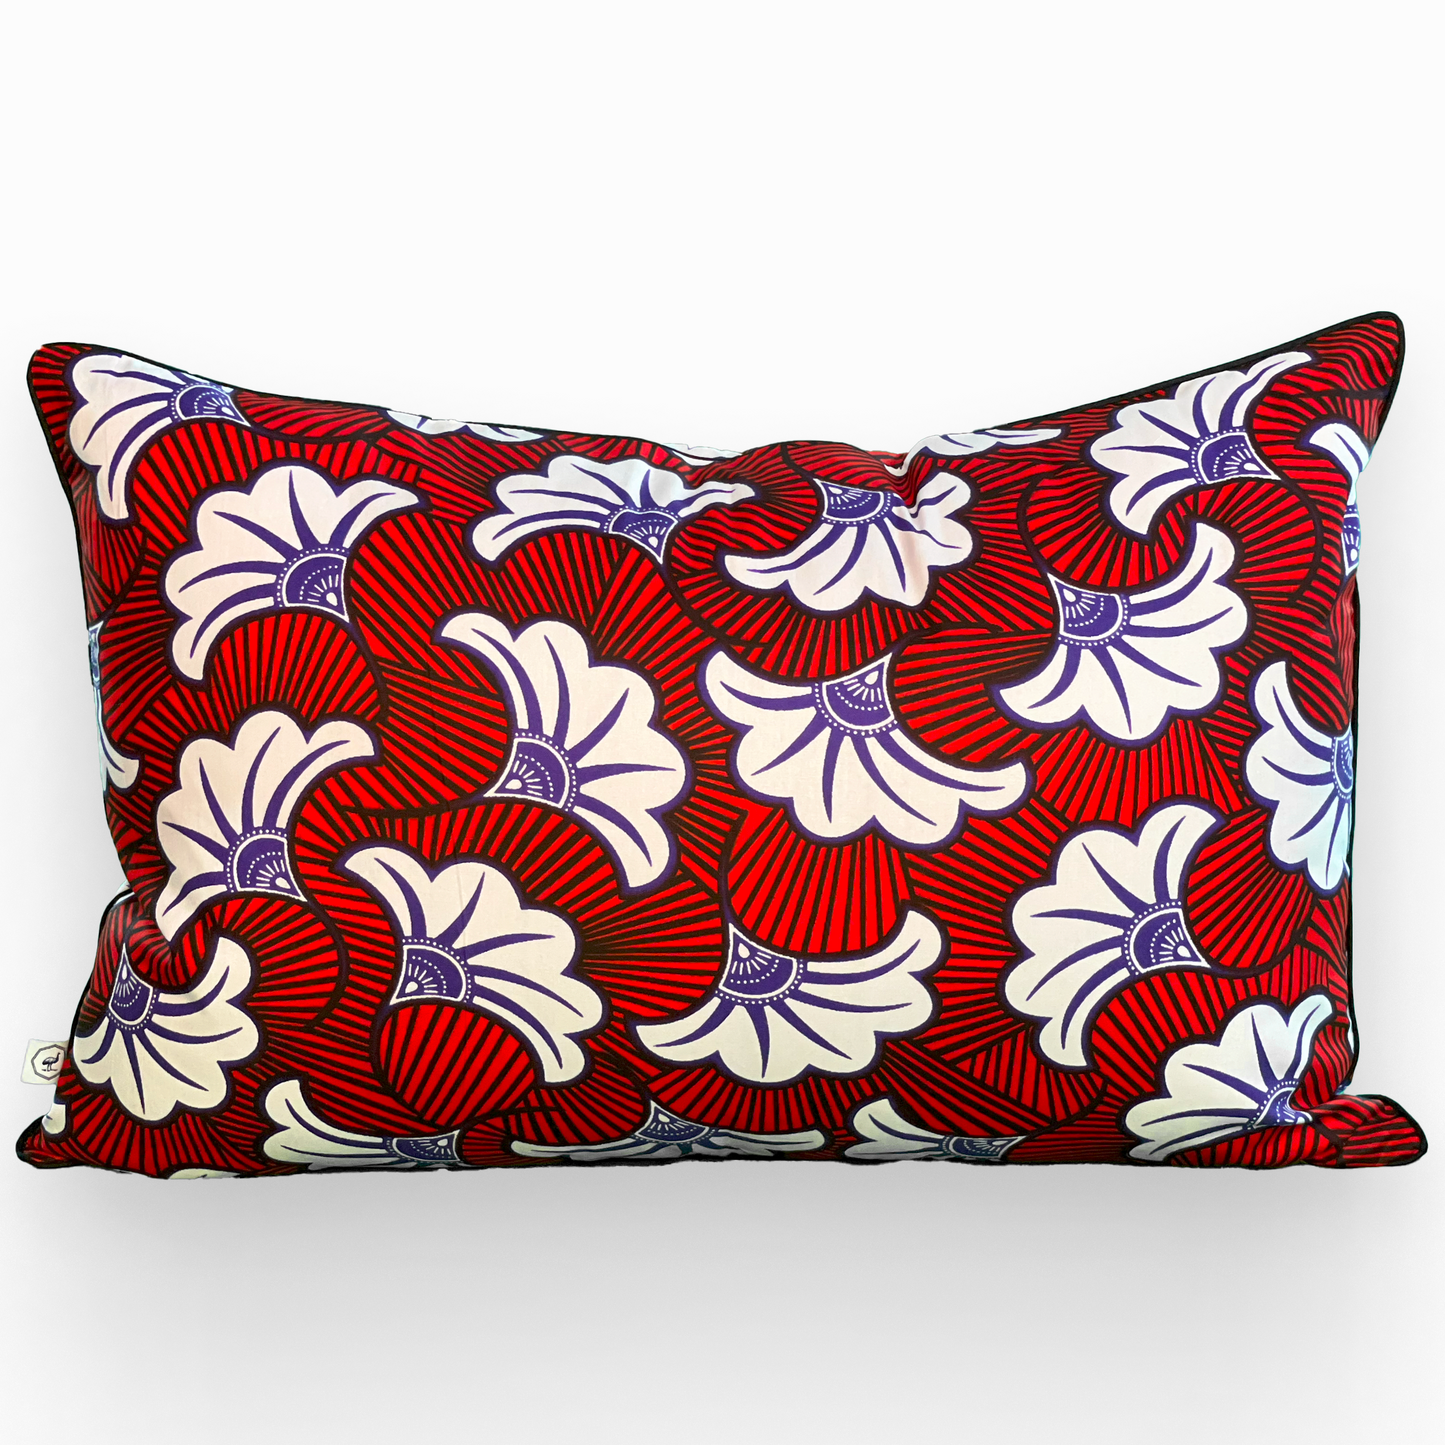 Housse de coussin zippée rectangle 40 x 60 cm en coton - wax africain -  UA . Multicolore : rouge, bleu, blanc, noir.